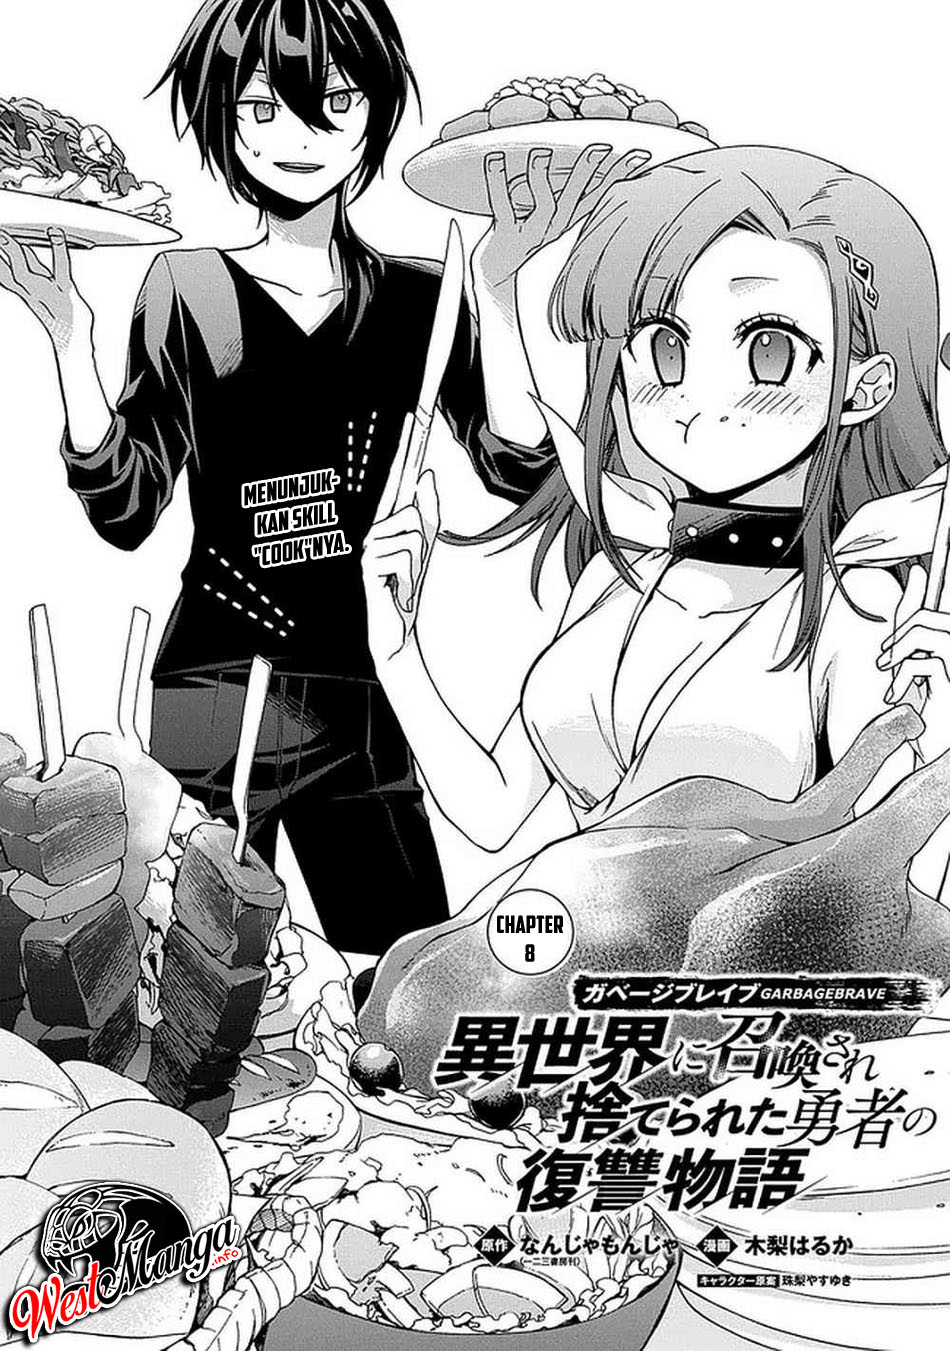 Garbage Brave: Isekai ni Shoukan Sare Suterareta Yuusha no Fukushuu Monogatari Chapter 8